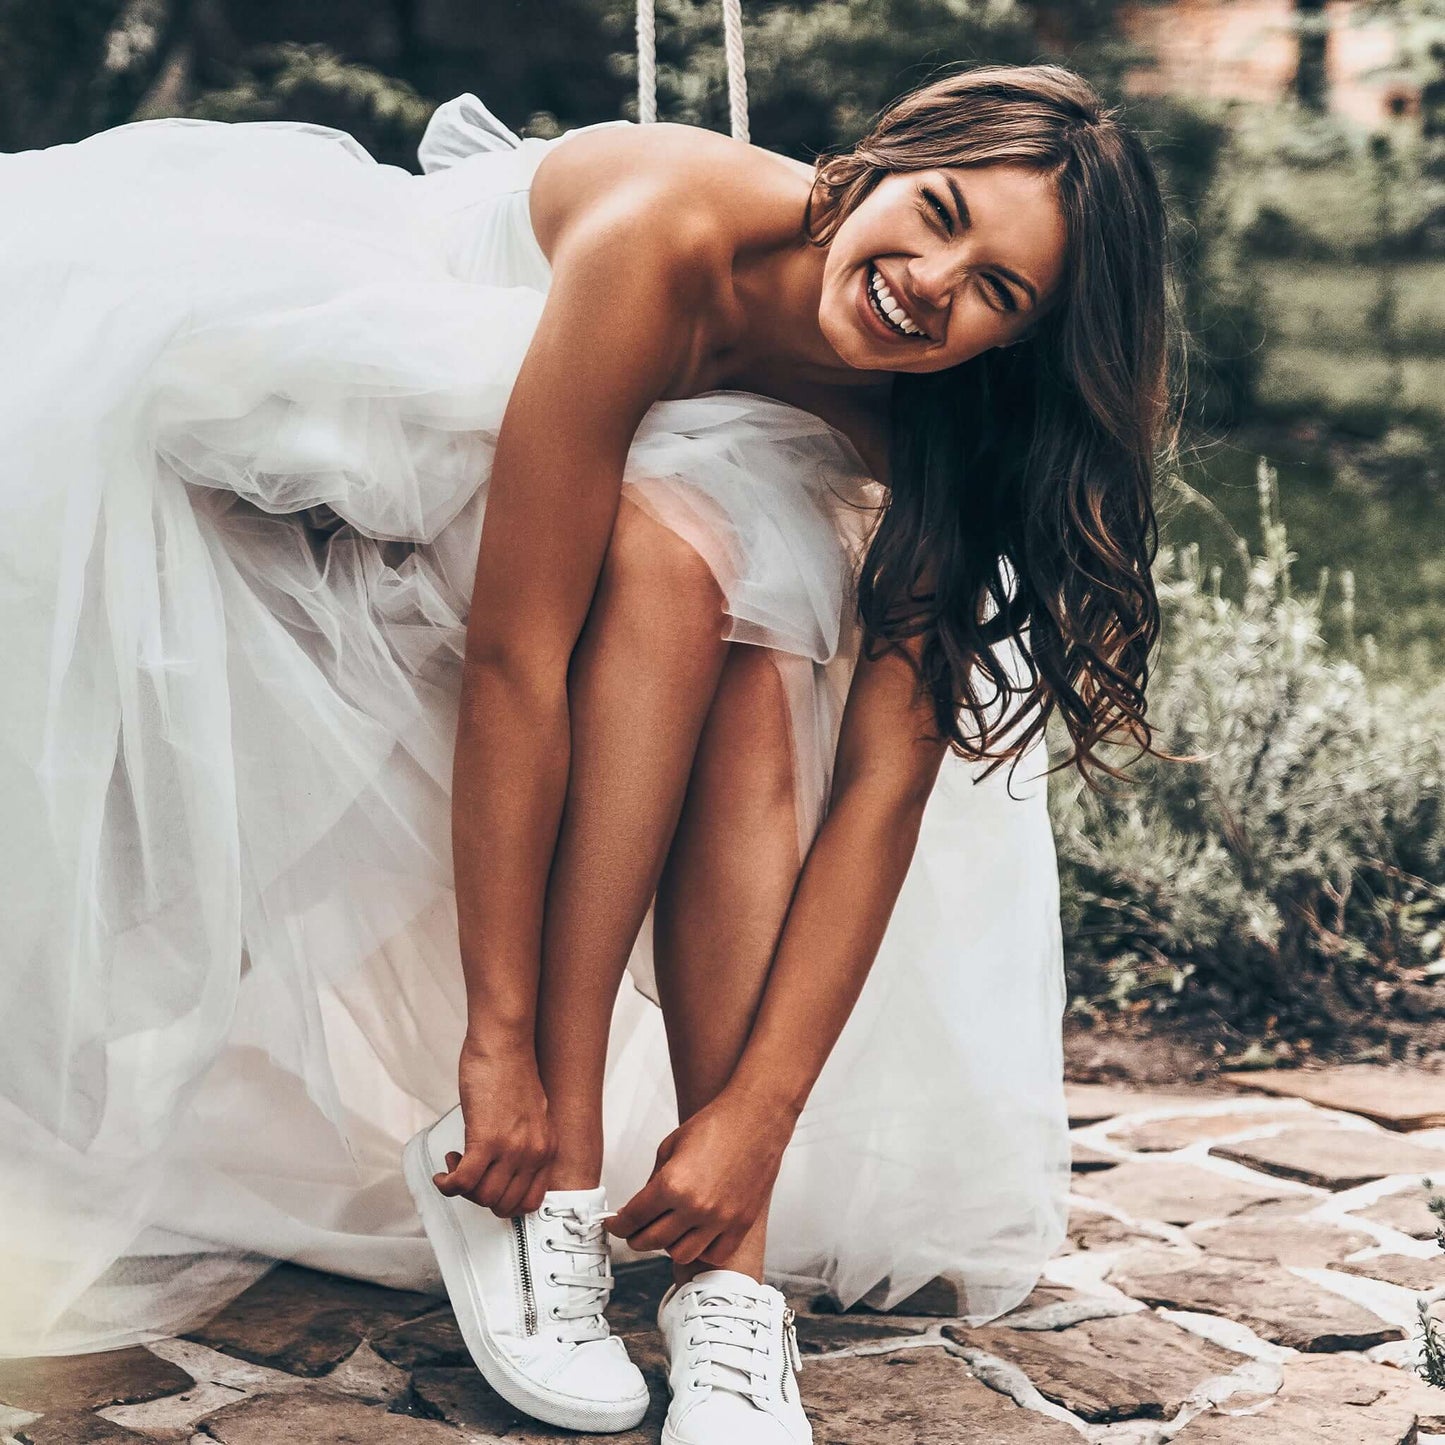 Heiratsurkunde übersetzen lassen: Eine junge Braut bereitet sich für die Hochzeit vor